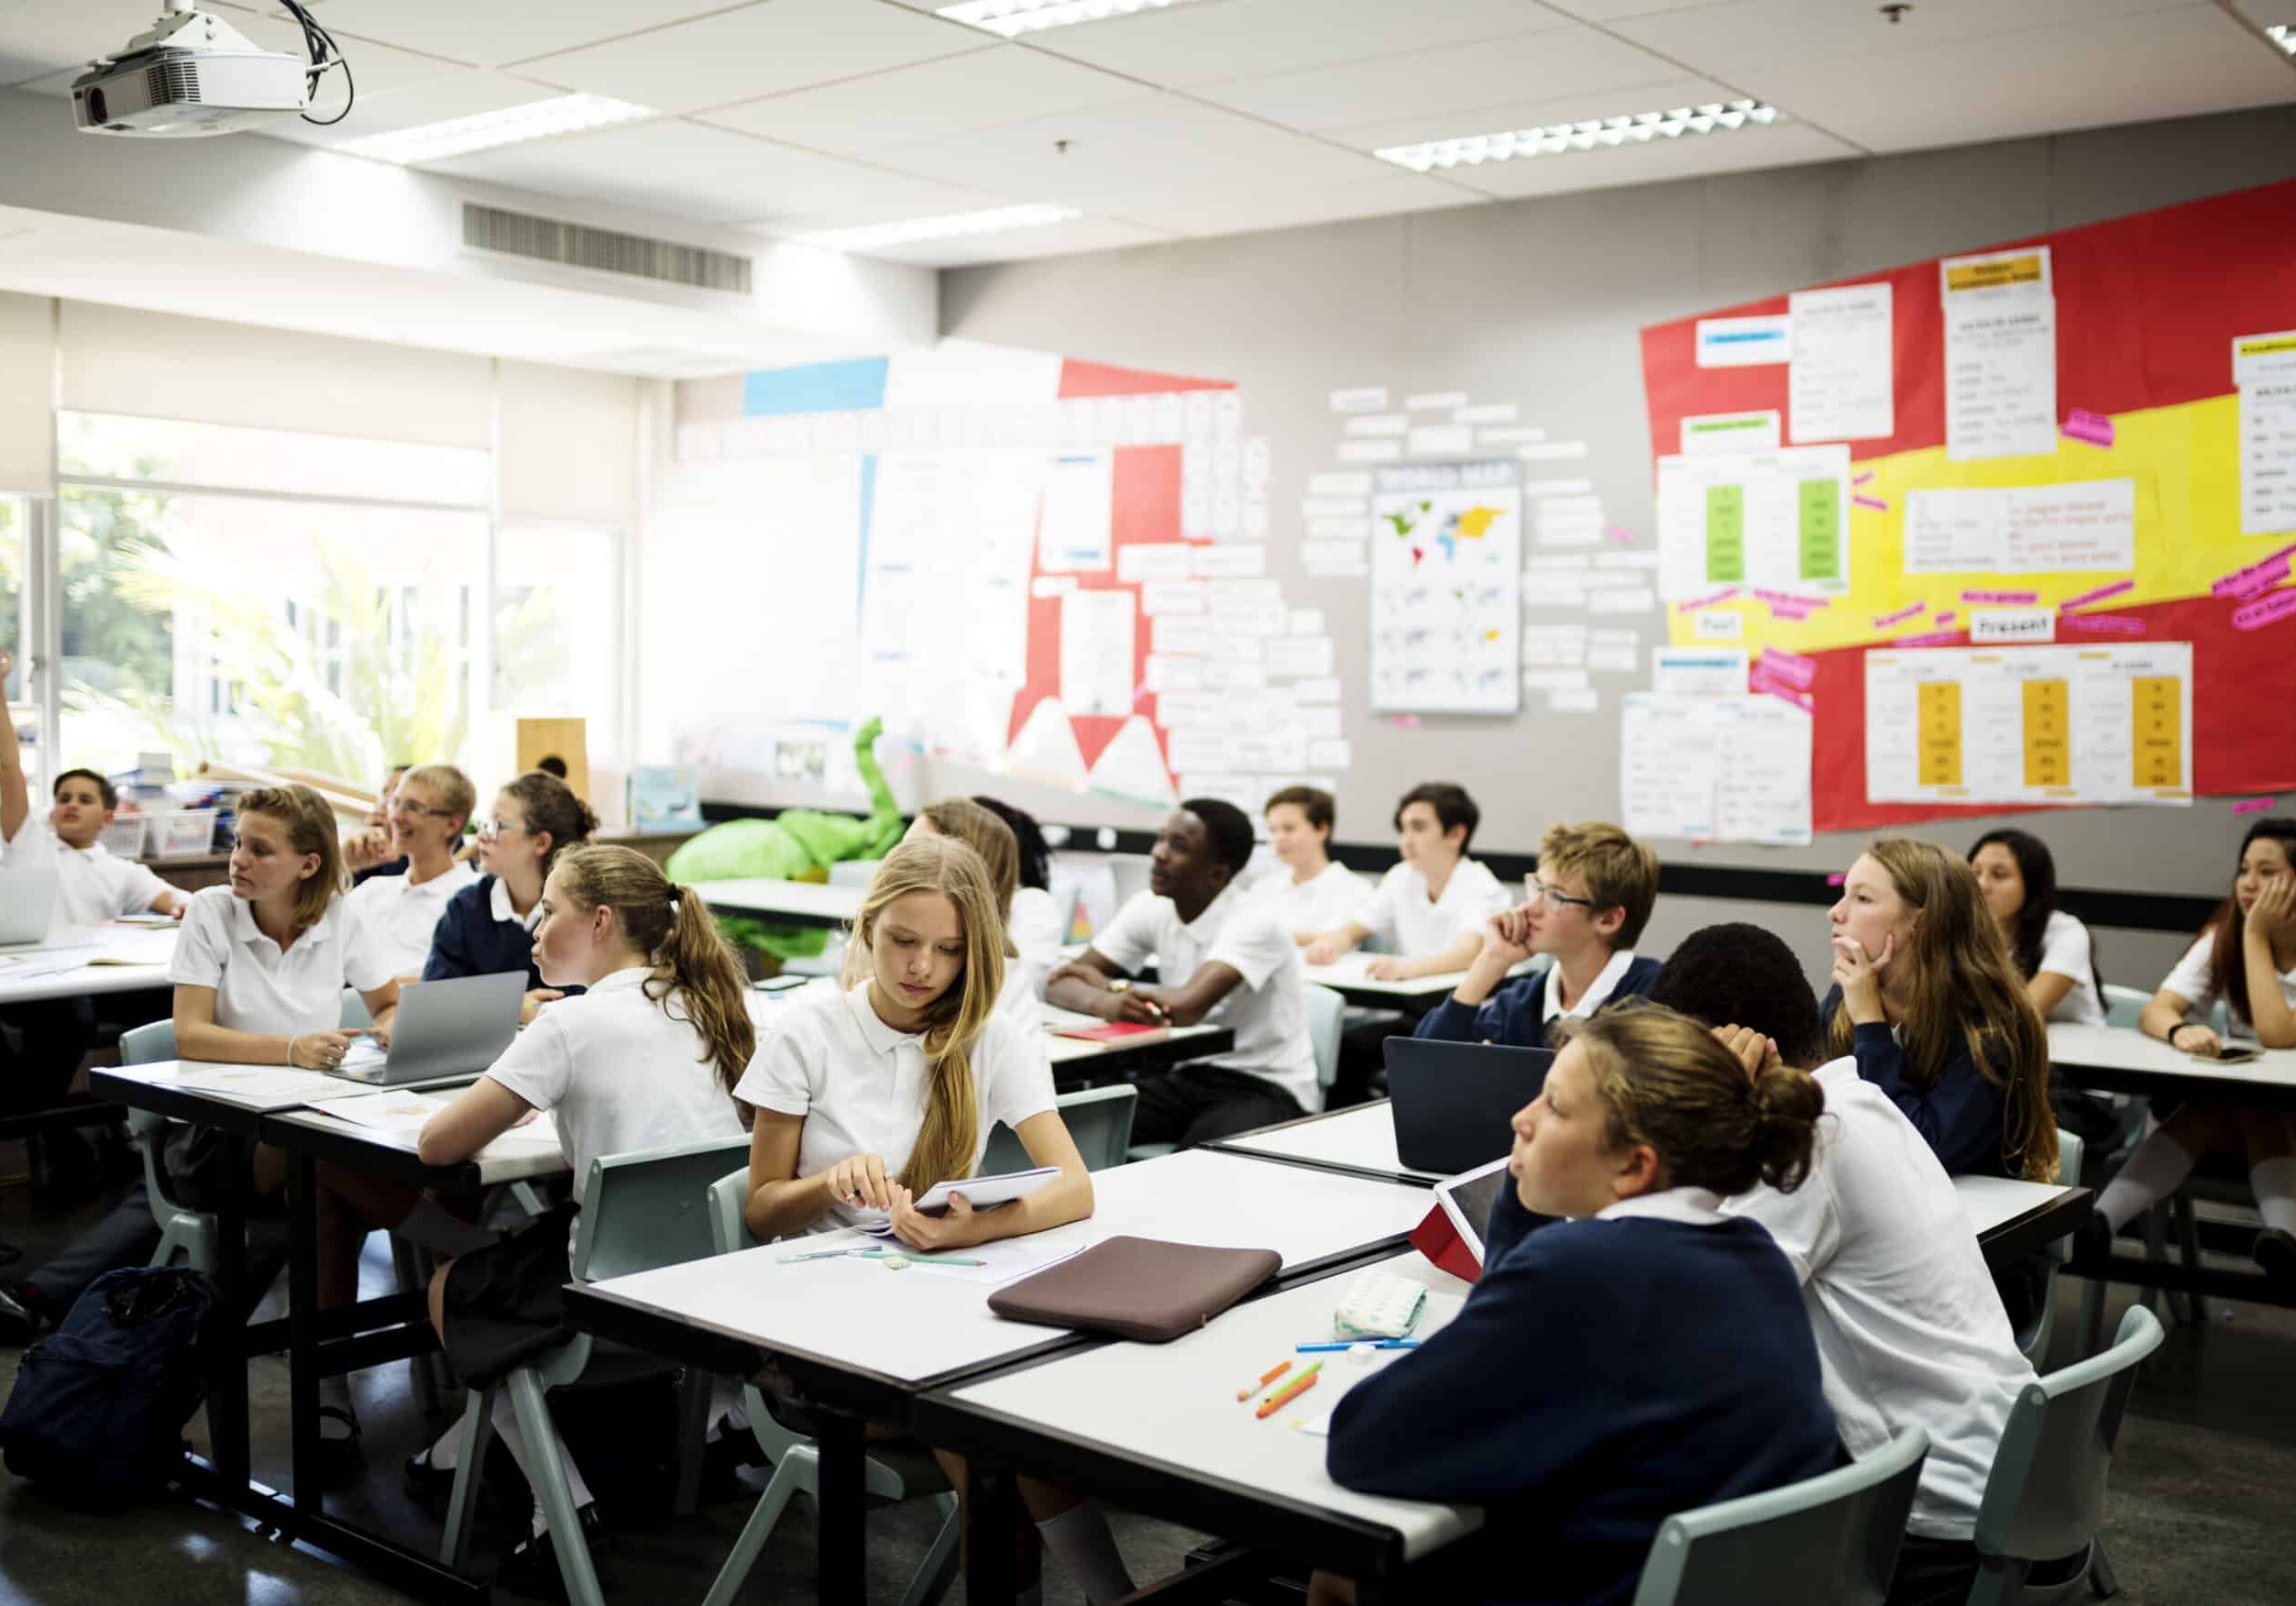 School children sitting at their desks in a classroom